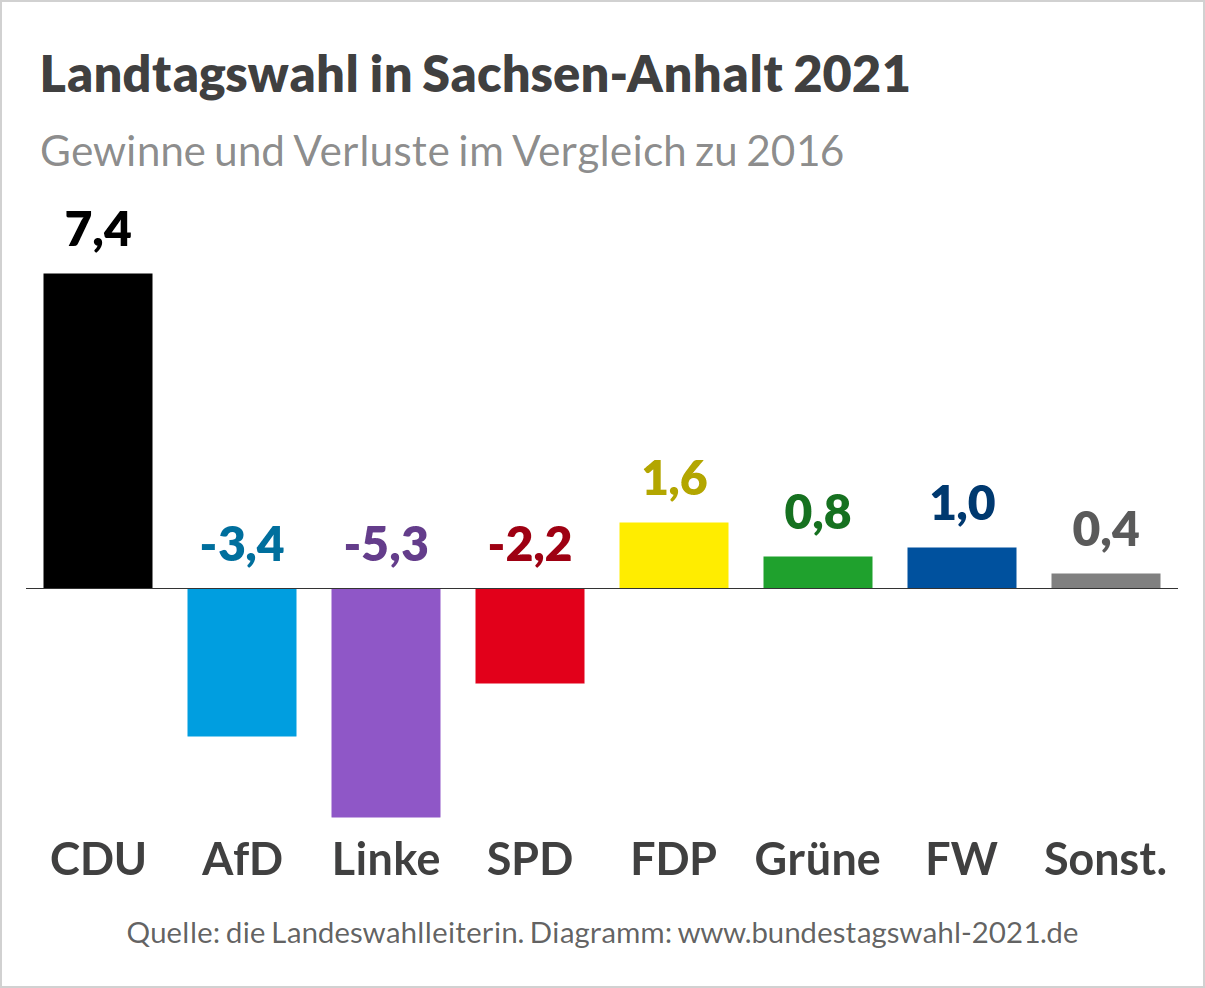 Landtagswahl 2021 in Sachsen-Anhalt - Vorläufiges Endergebnis